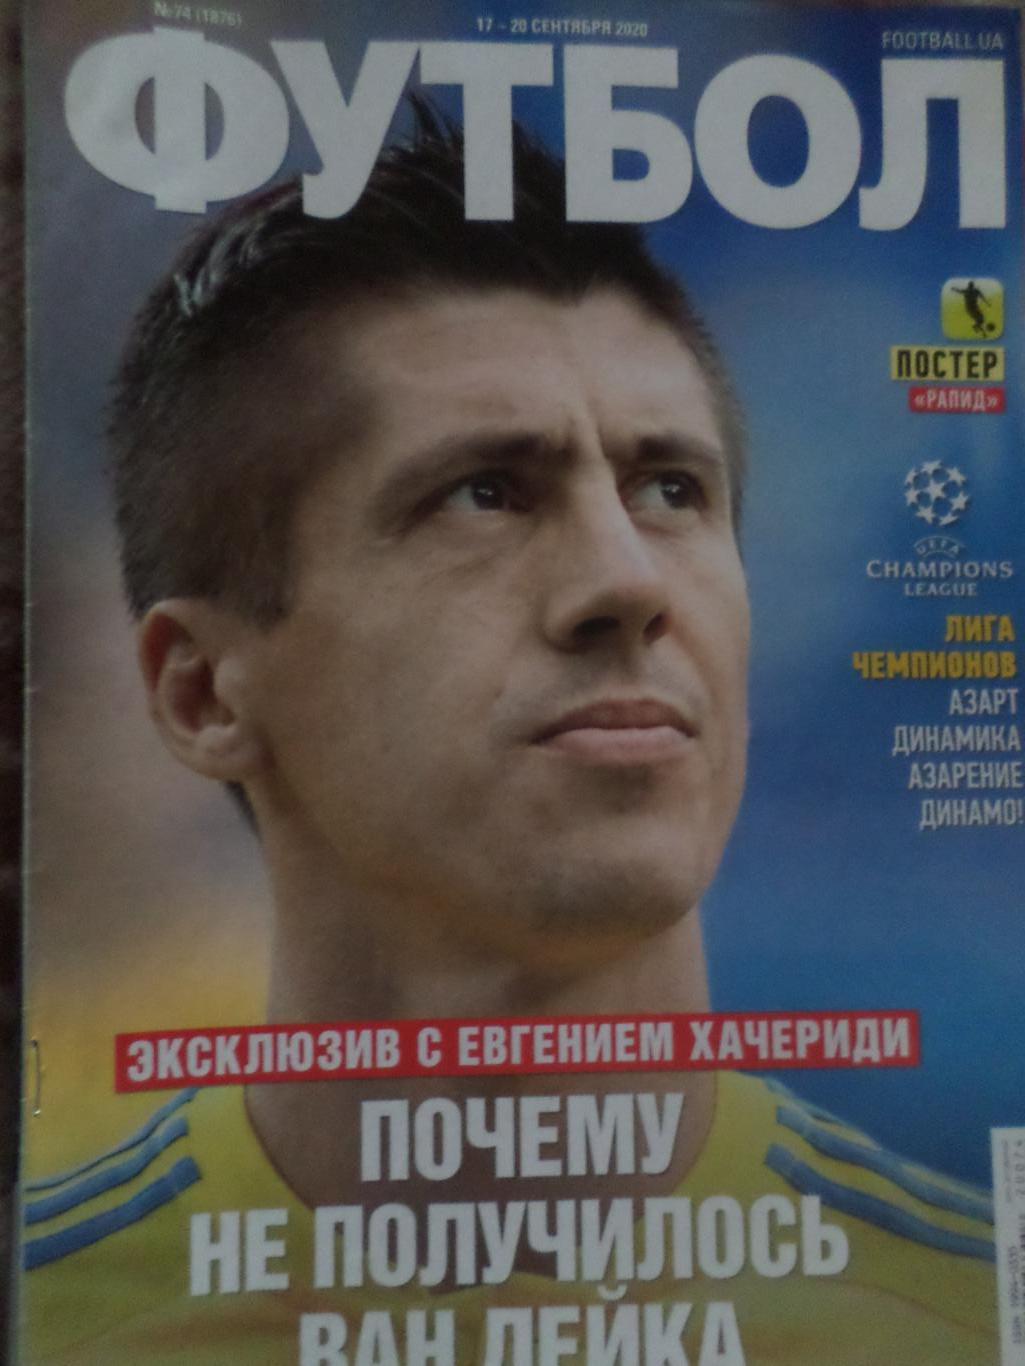 Еженедельник Футбол, Киев, № 74 2020 год